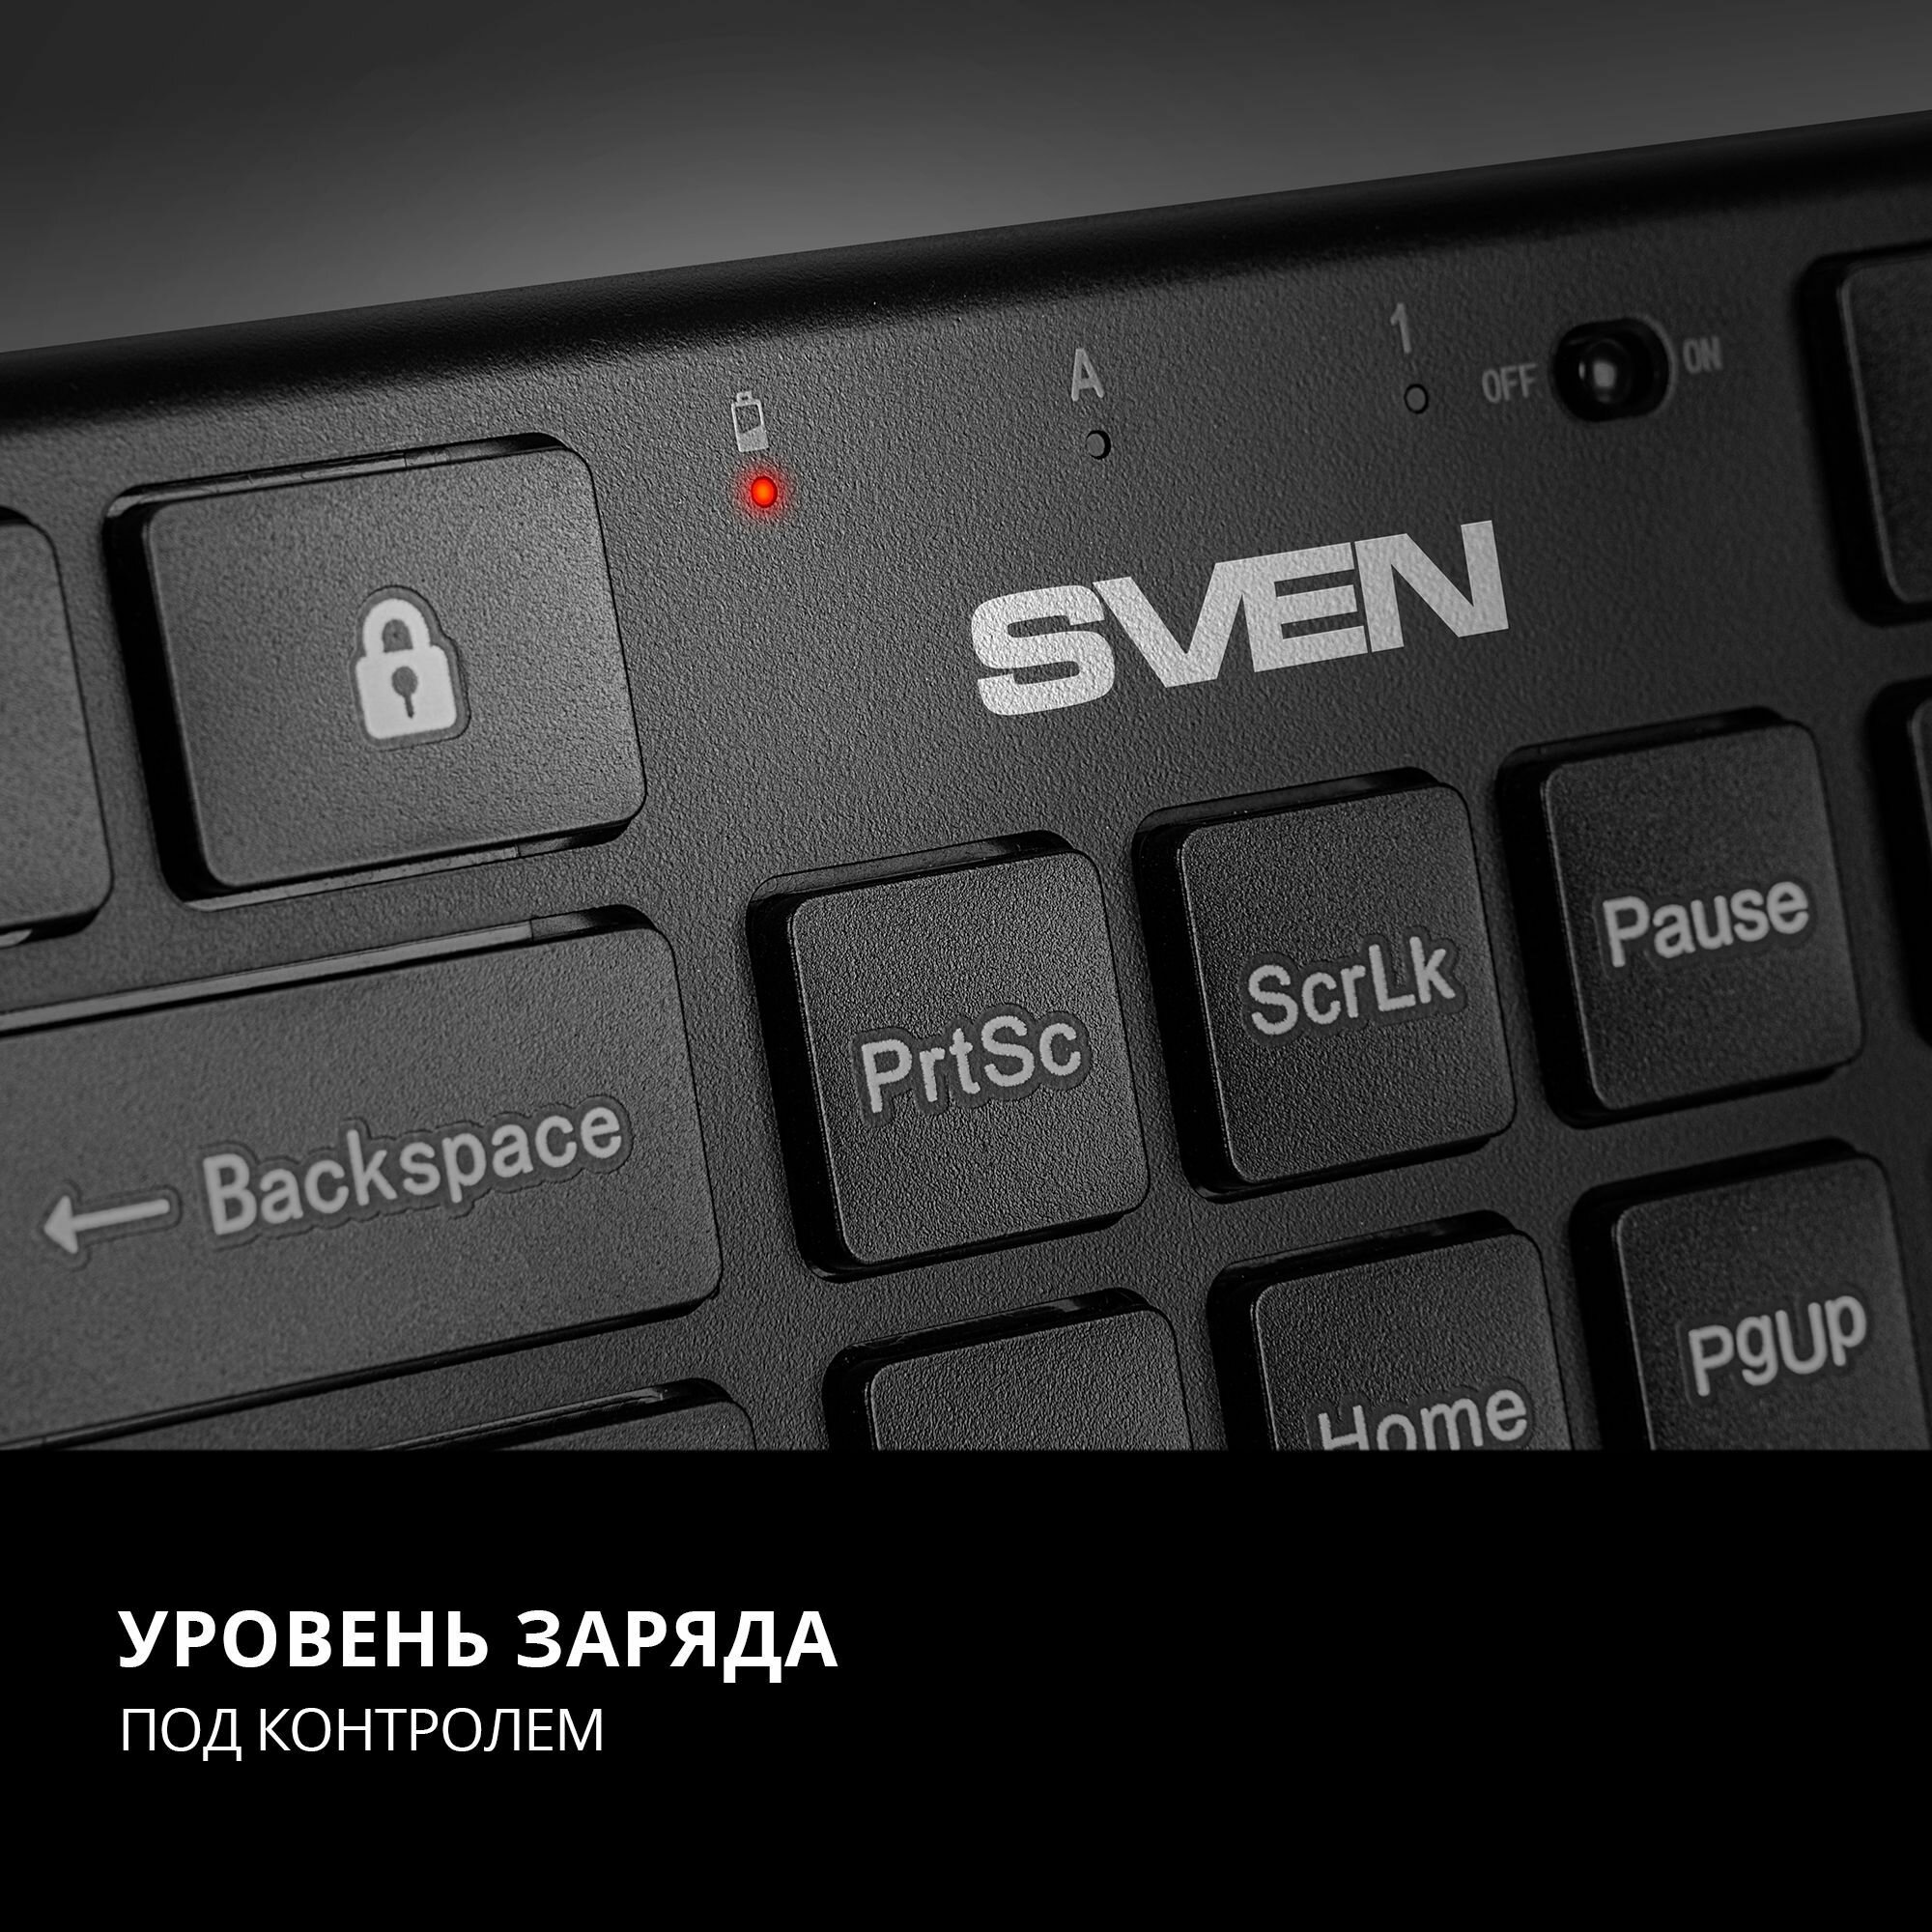 Набор беспроводные клавиатура и мышь SVEN KB-C2550W чёрные